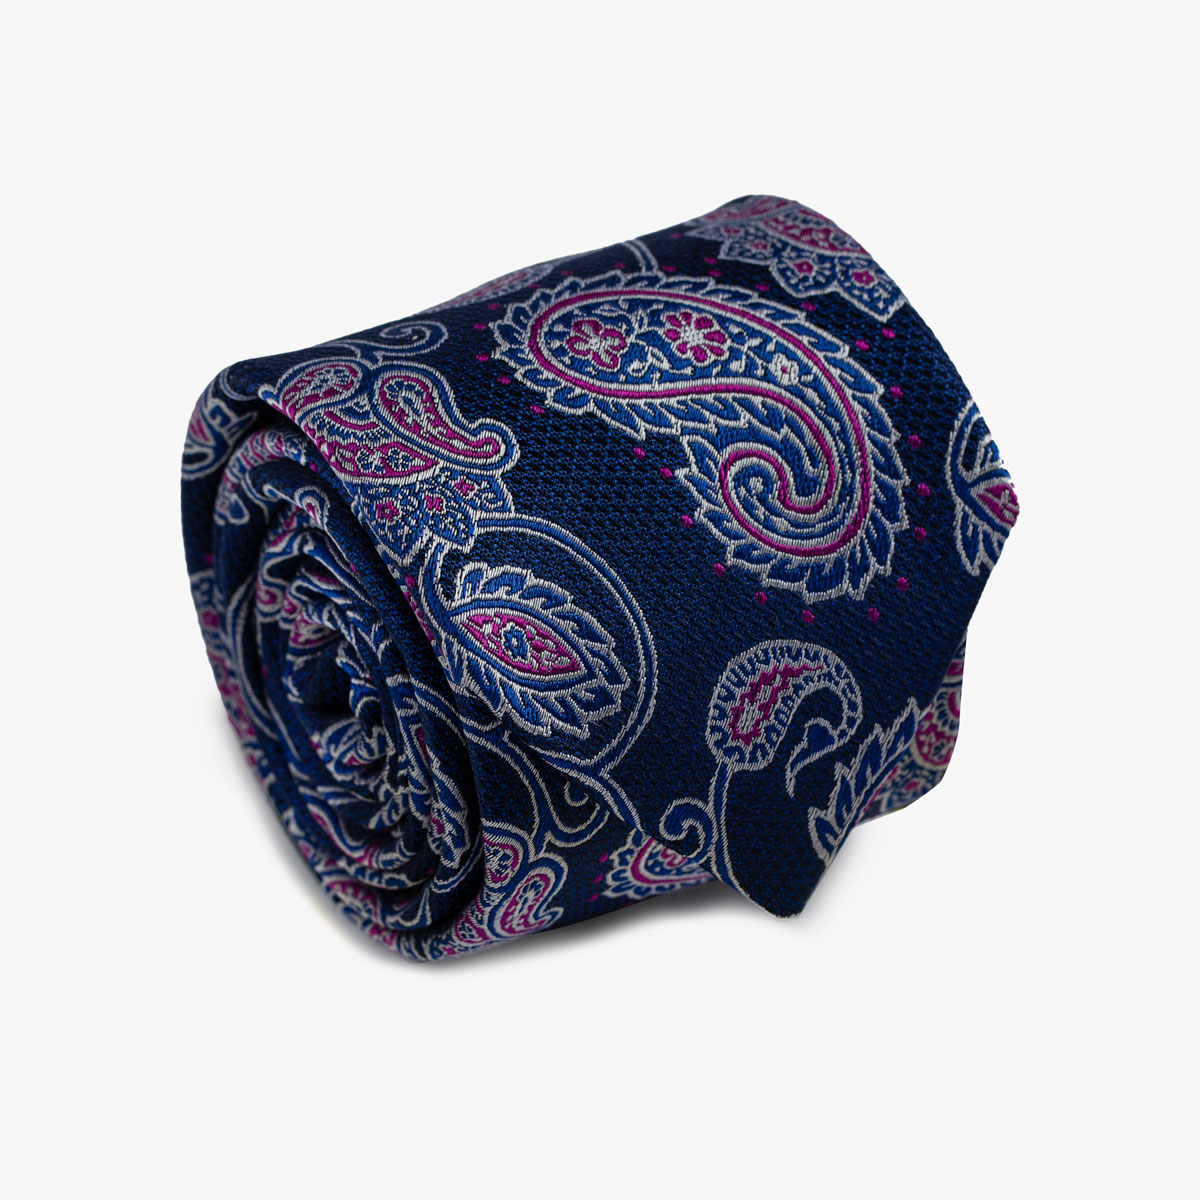 Aufgerollte Krawatte mit Paisley-Muster in blau und magenta